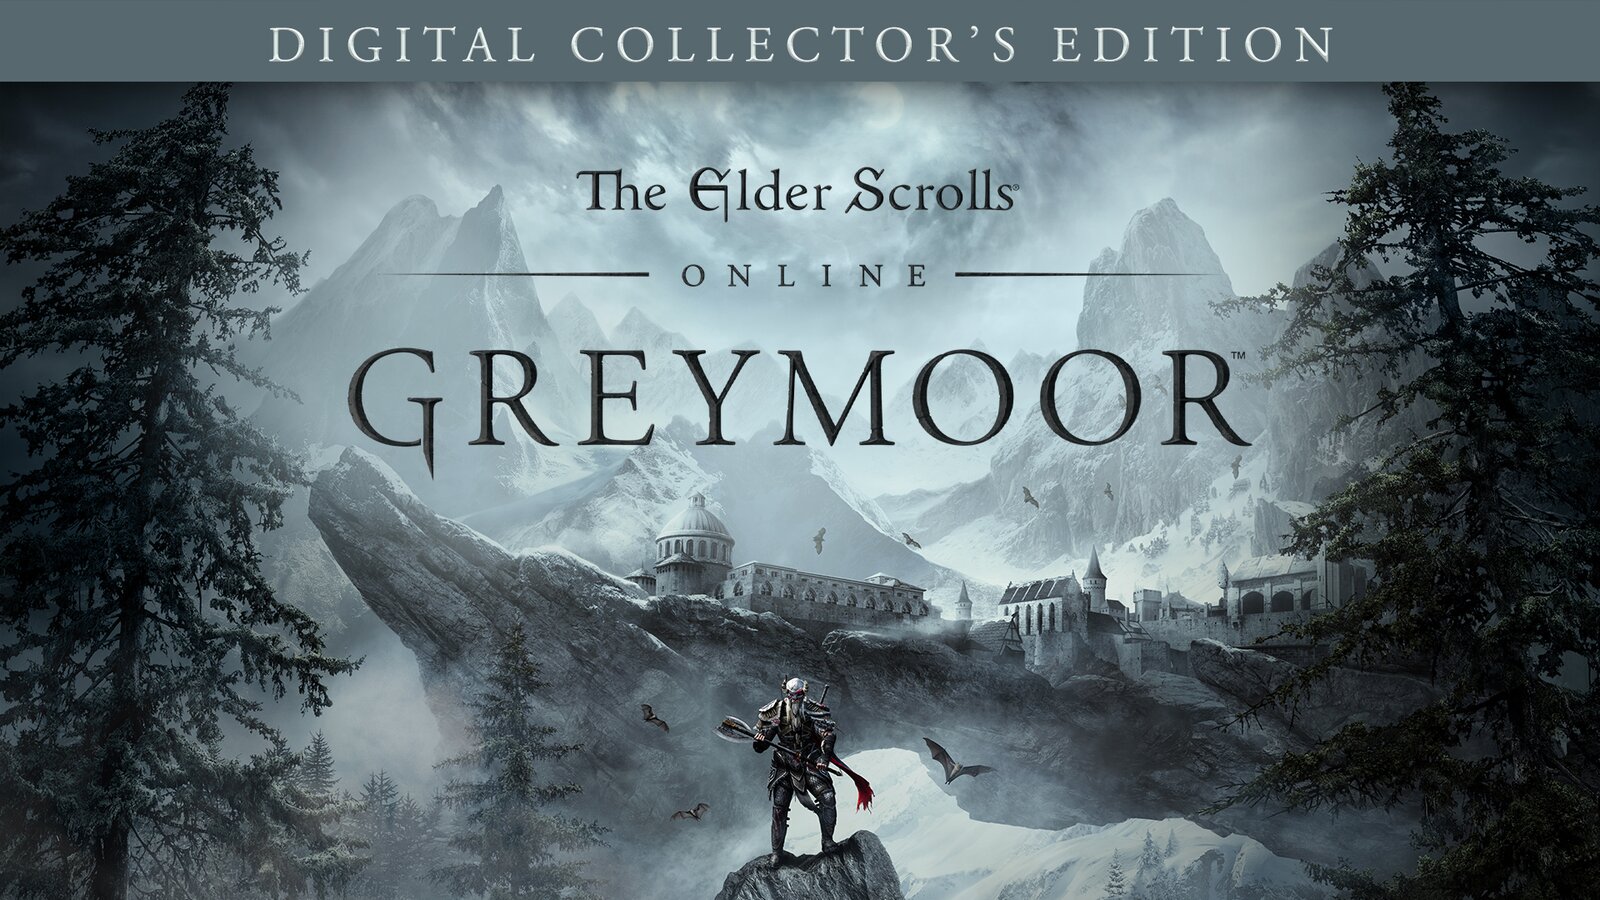 The Elder Scrolls Online: Greymoor - Digital Collector's Edition